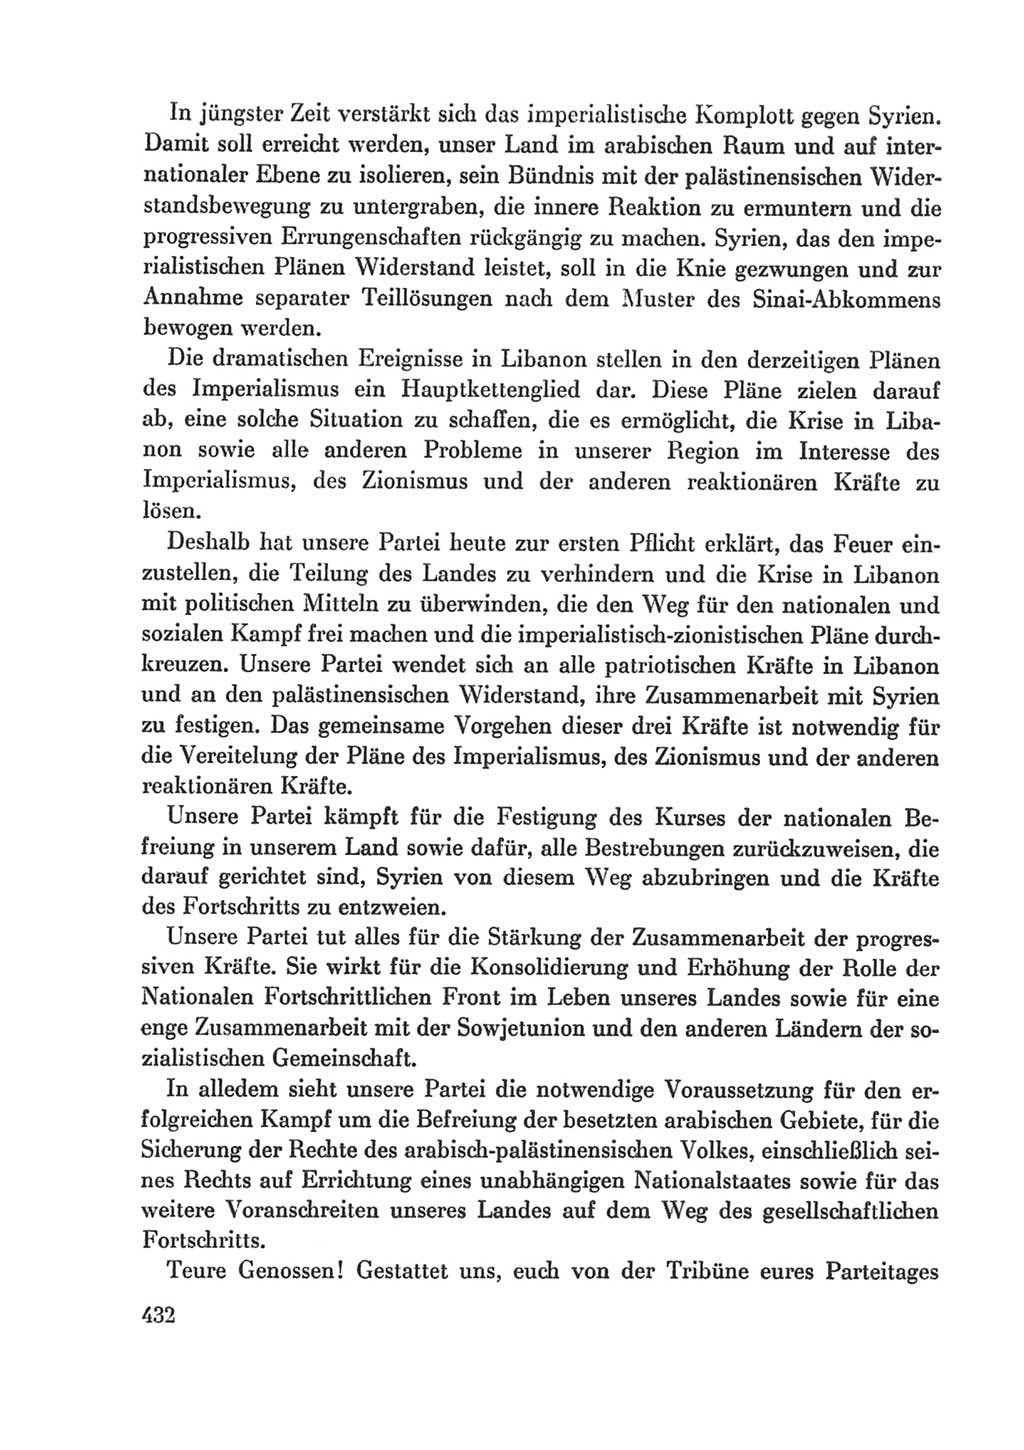 Protokoll der Verhandlungen des Ⅸ. Parteitages der Sozialistischen Einheitspartei Deutschlands (SED) [Deutsche Demokratische Republik (DDR)] 1976, Band 1, Seite 432 (Prot. Verh. Ⅸ. PT SED DDR 1976, Bd. 1, S. 432)